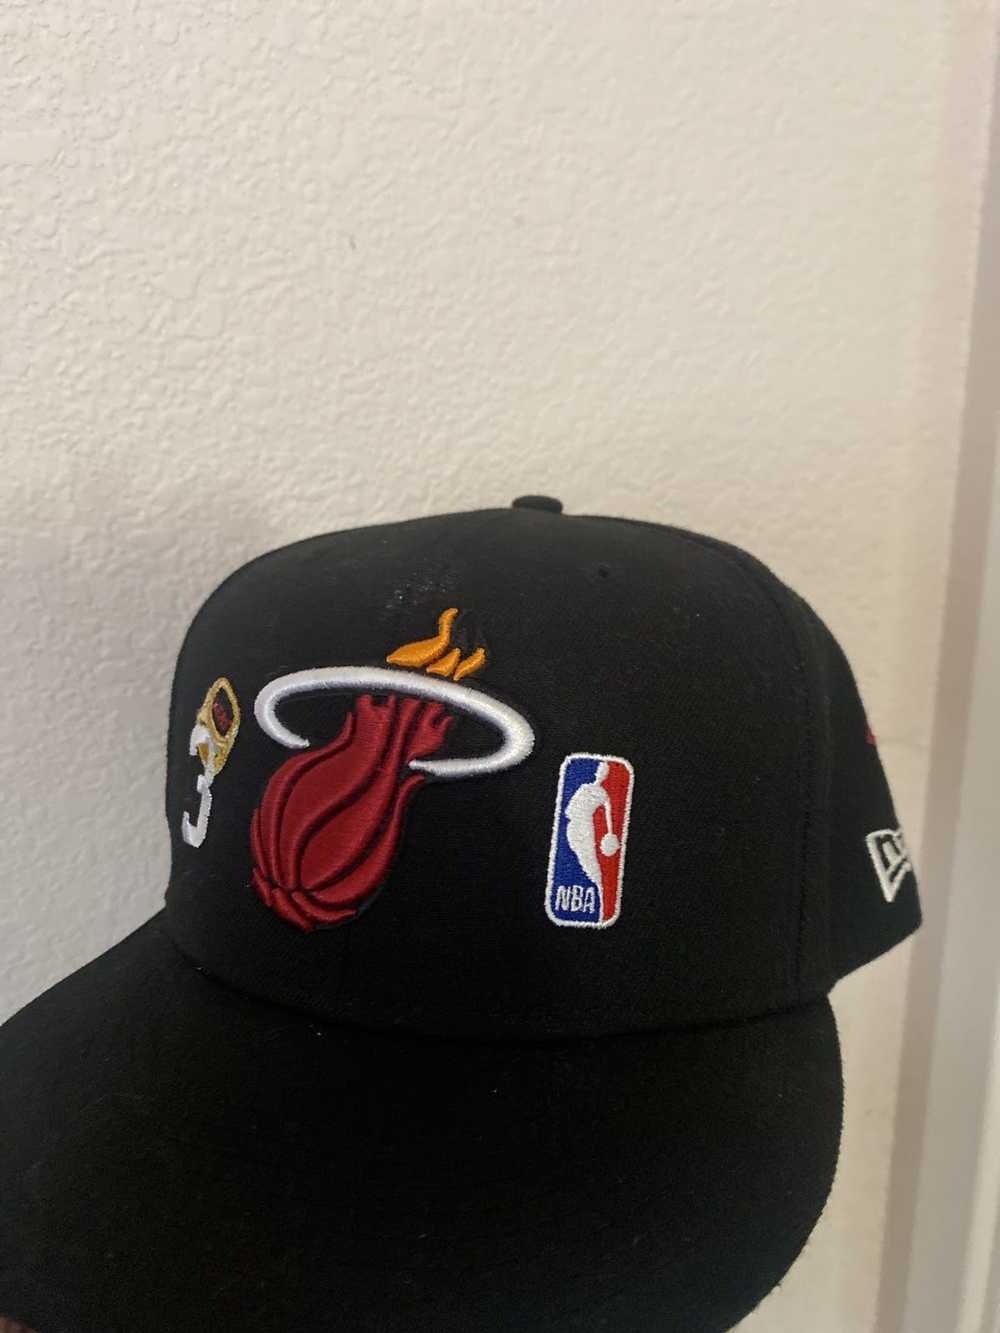 NBA × New Era New era x Miami heat 3peat hat - image 2